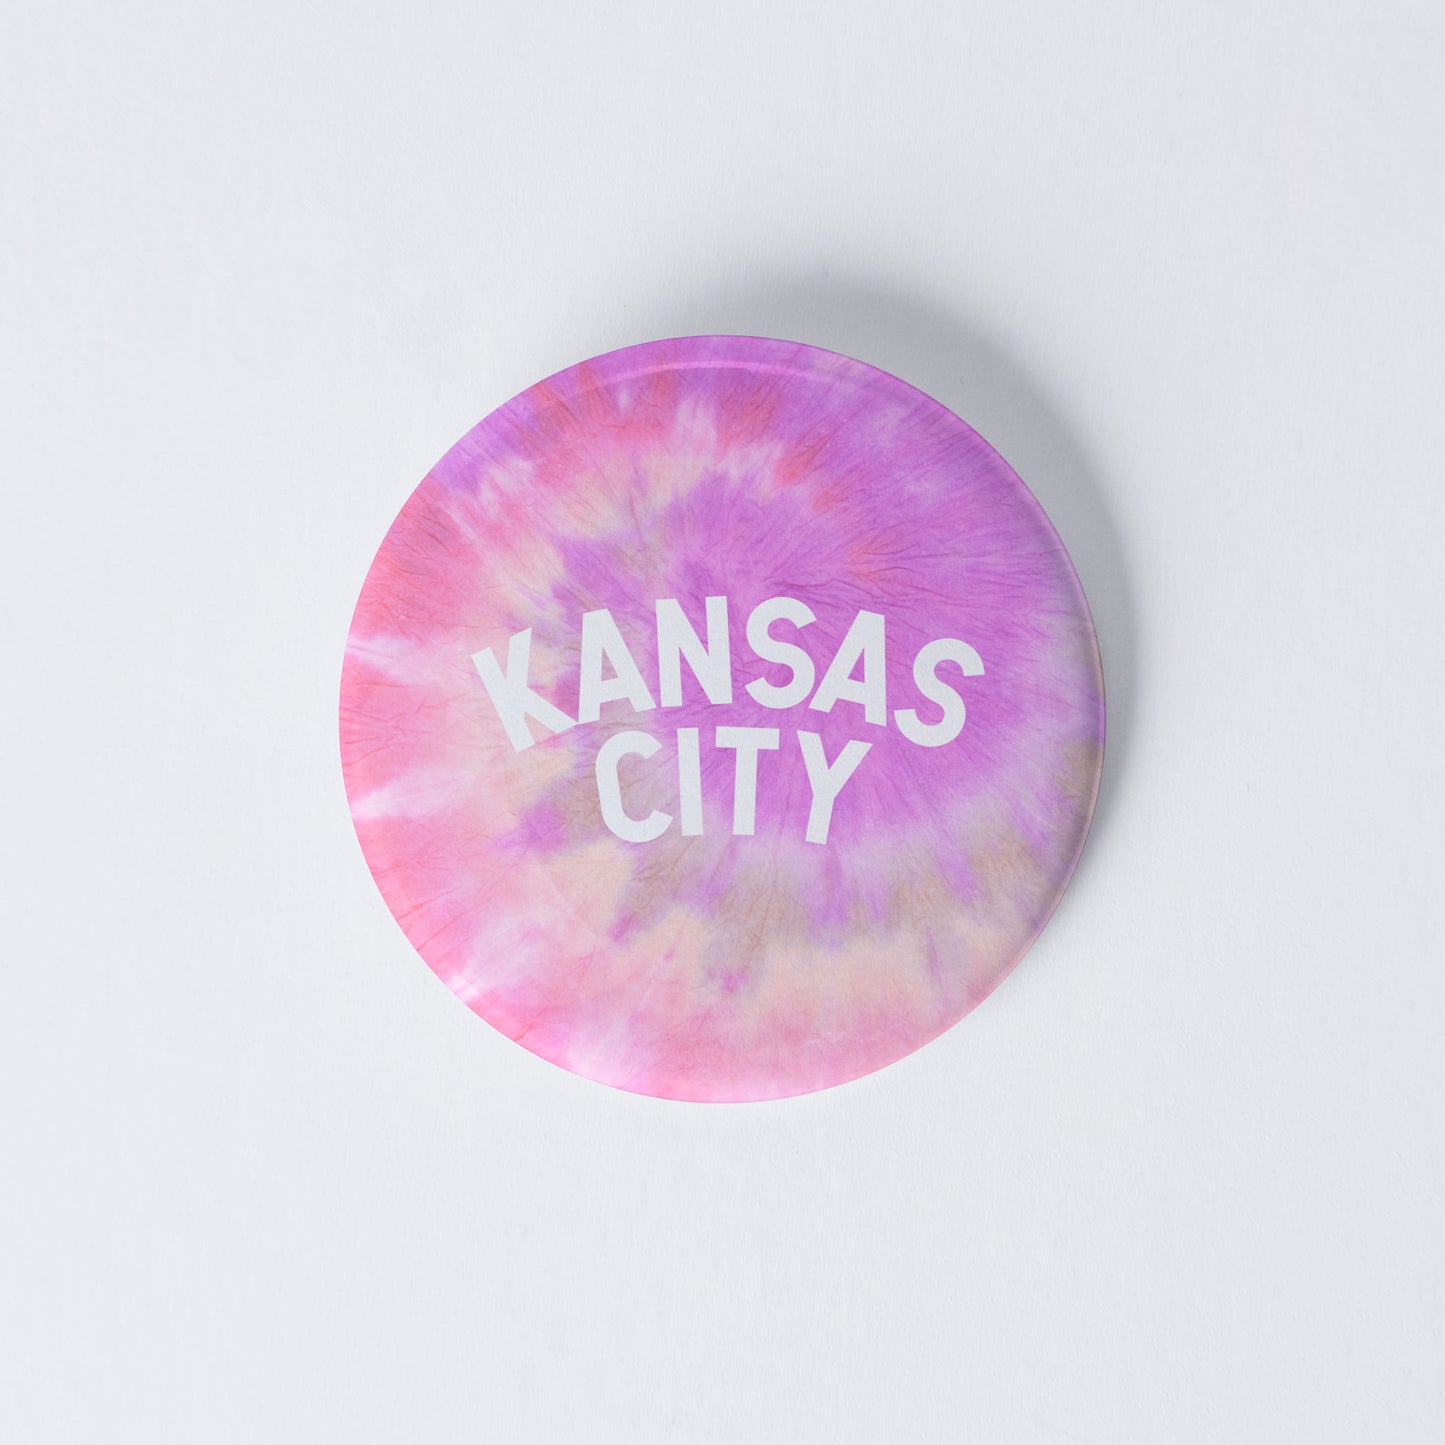 Vintage Tie Dye Kansas City Pinback Button - Pink